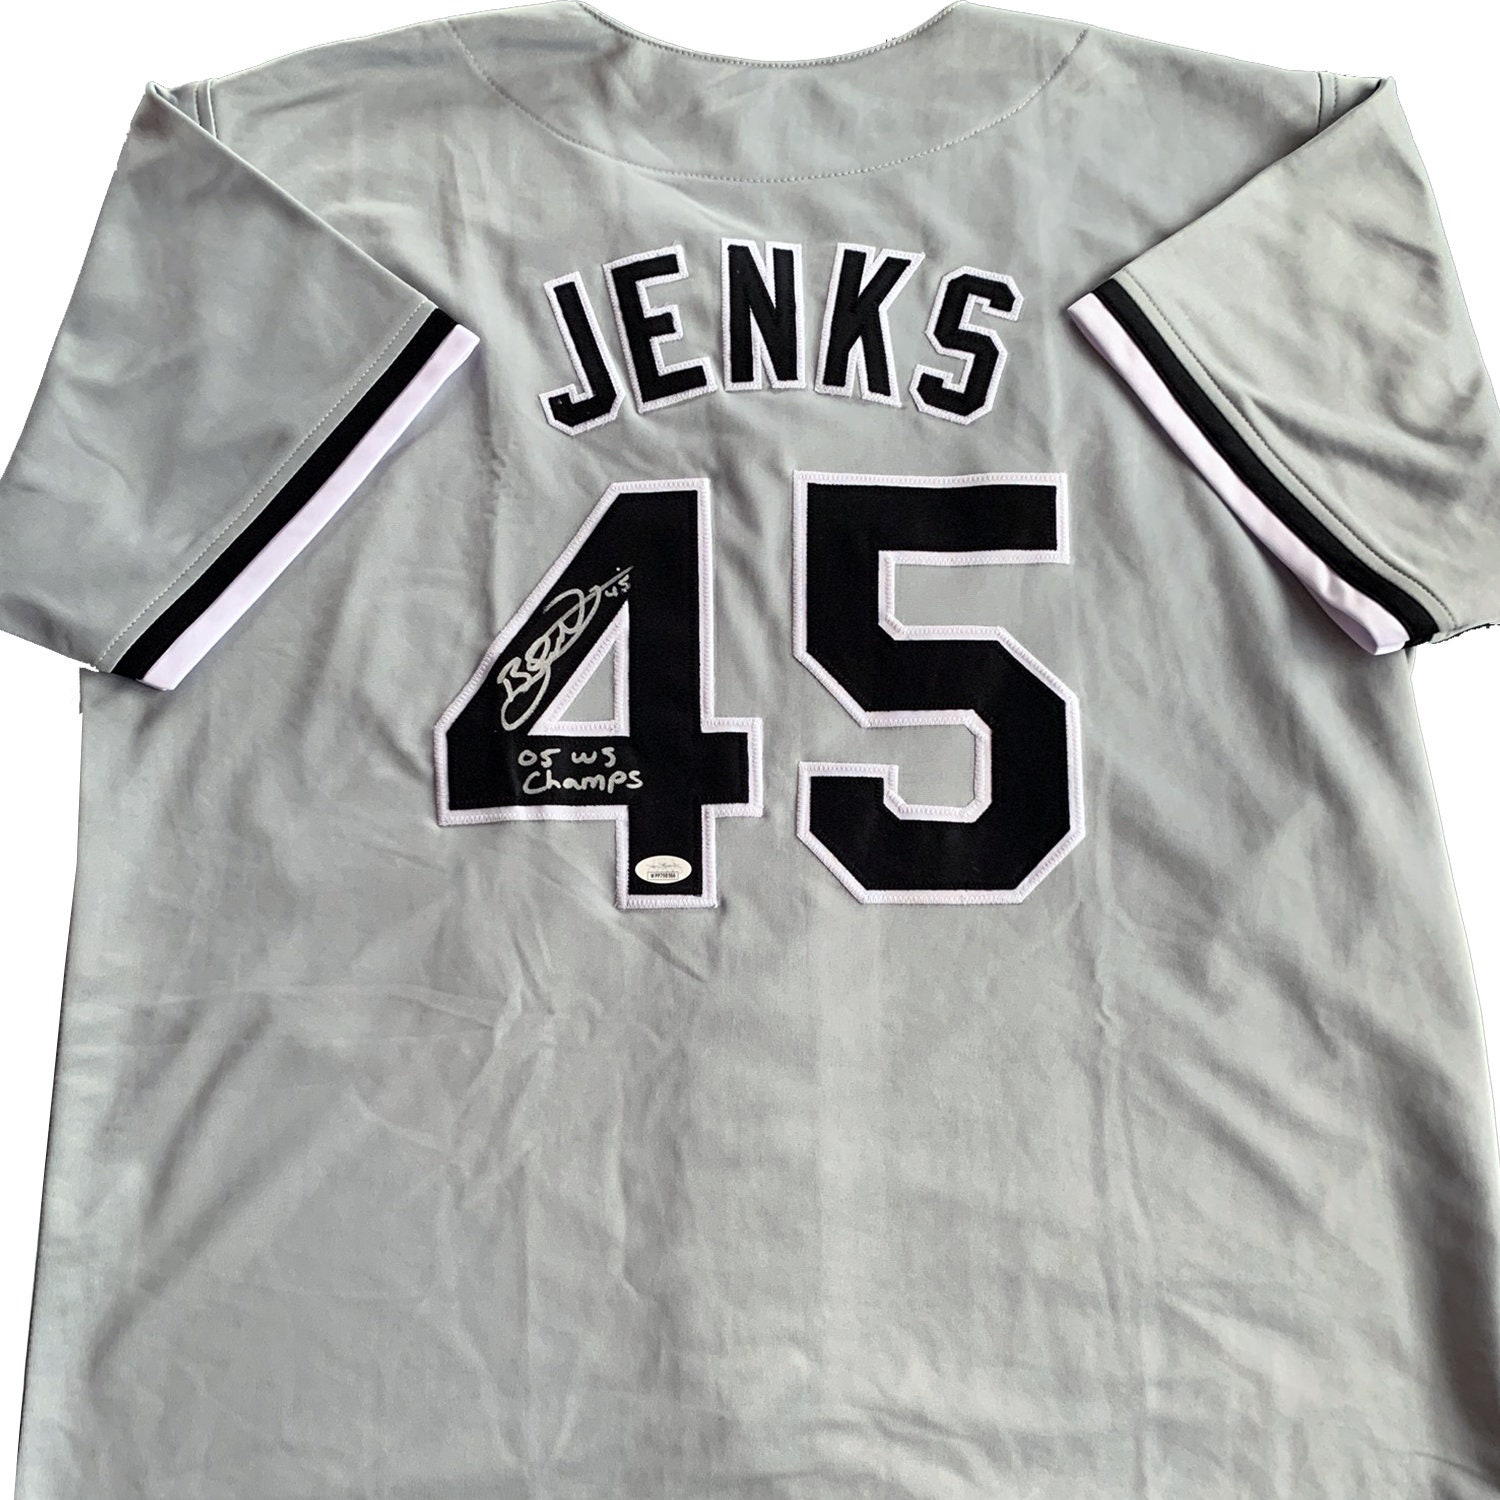 Bobby Jenks Signed Gray Chicago White Sox Jersey JSA 